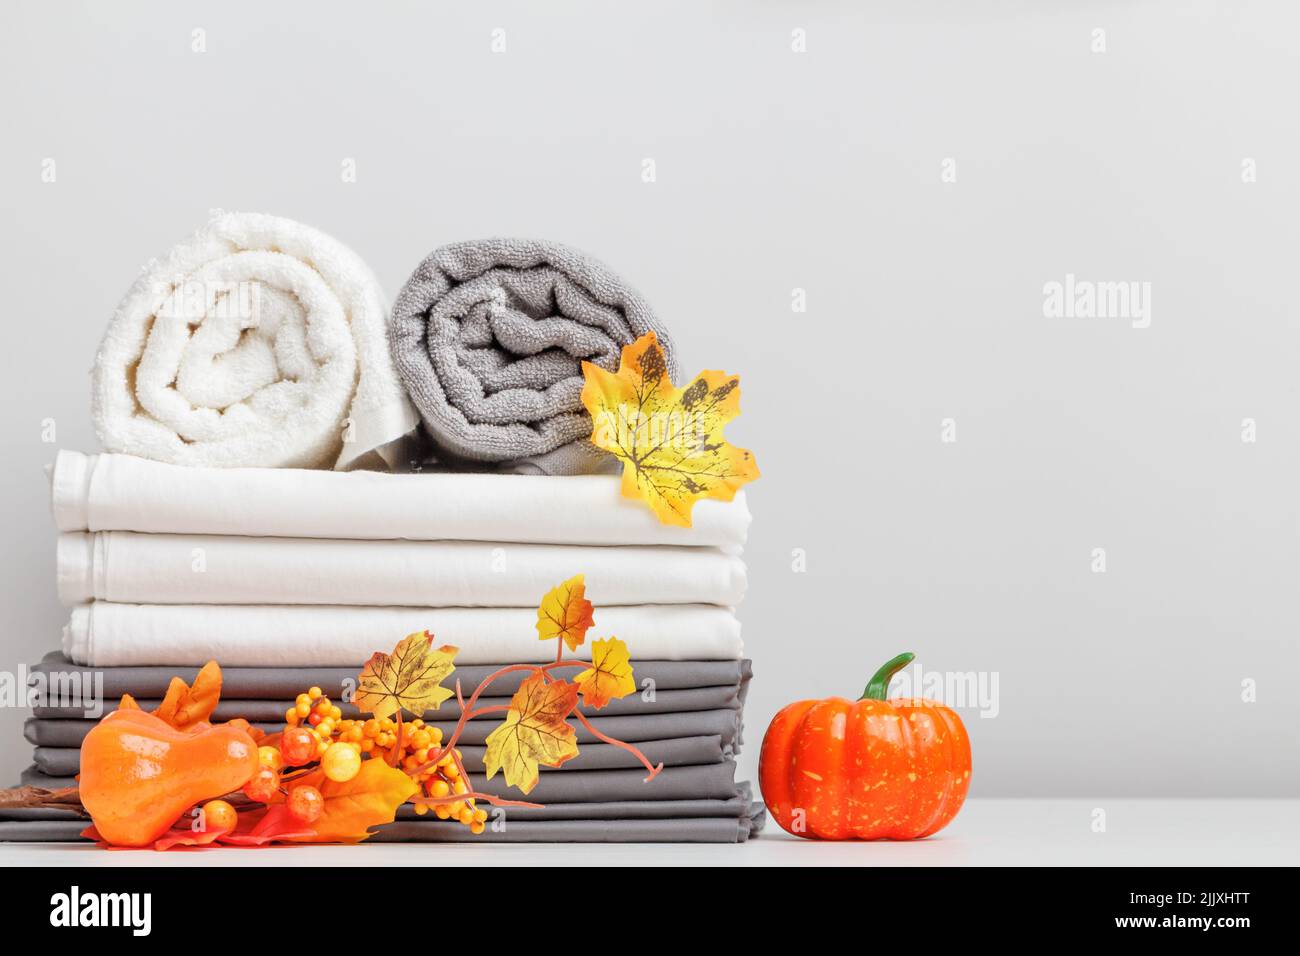 Weiße und graue Bettwäsche, Bettwäsche und zwei gefaltete Handtücher auf einem Tisch mit halloween-Dekor. Stockfoto